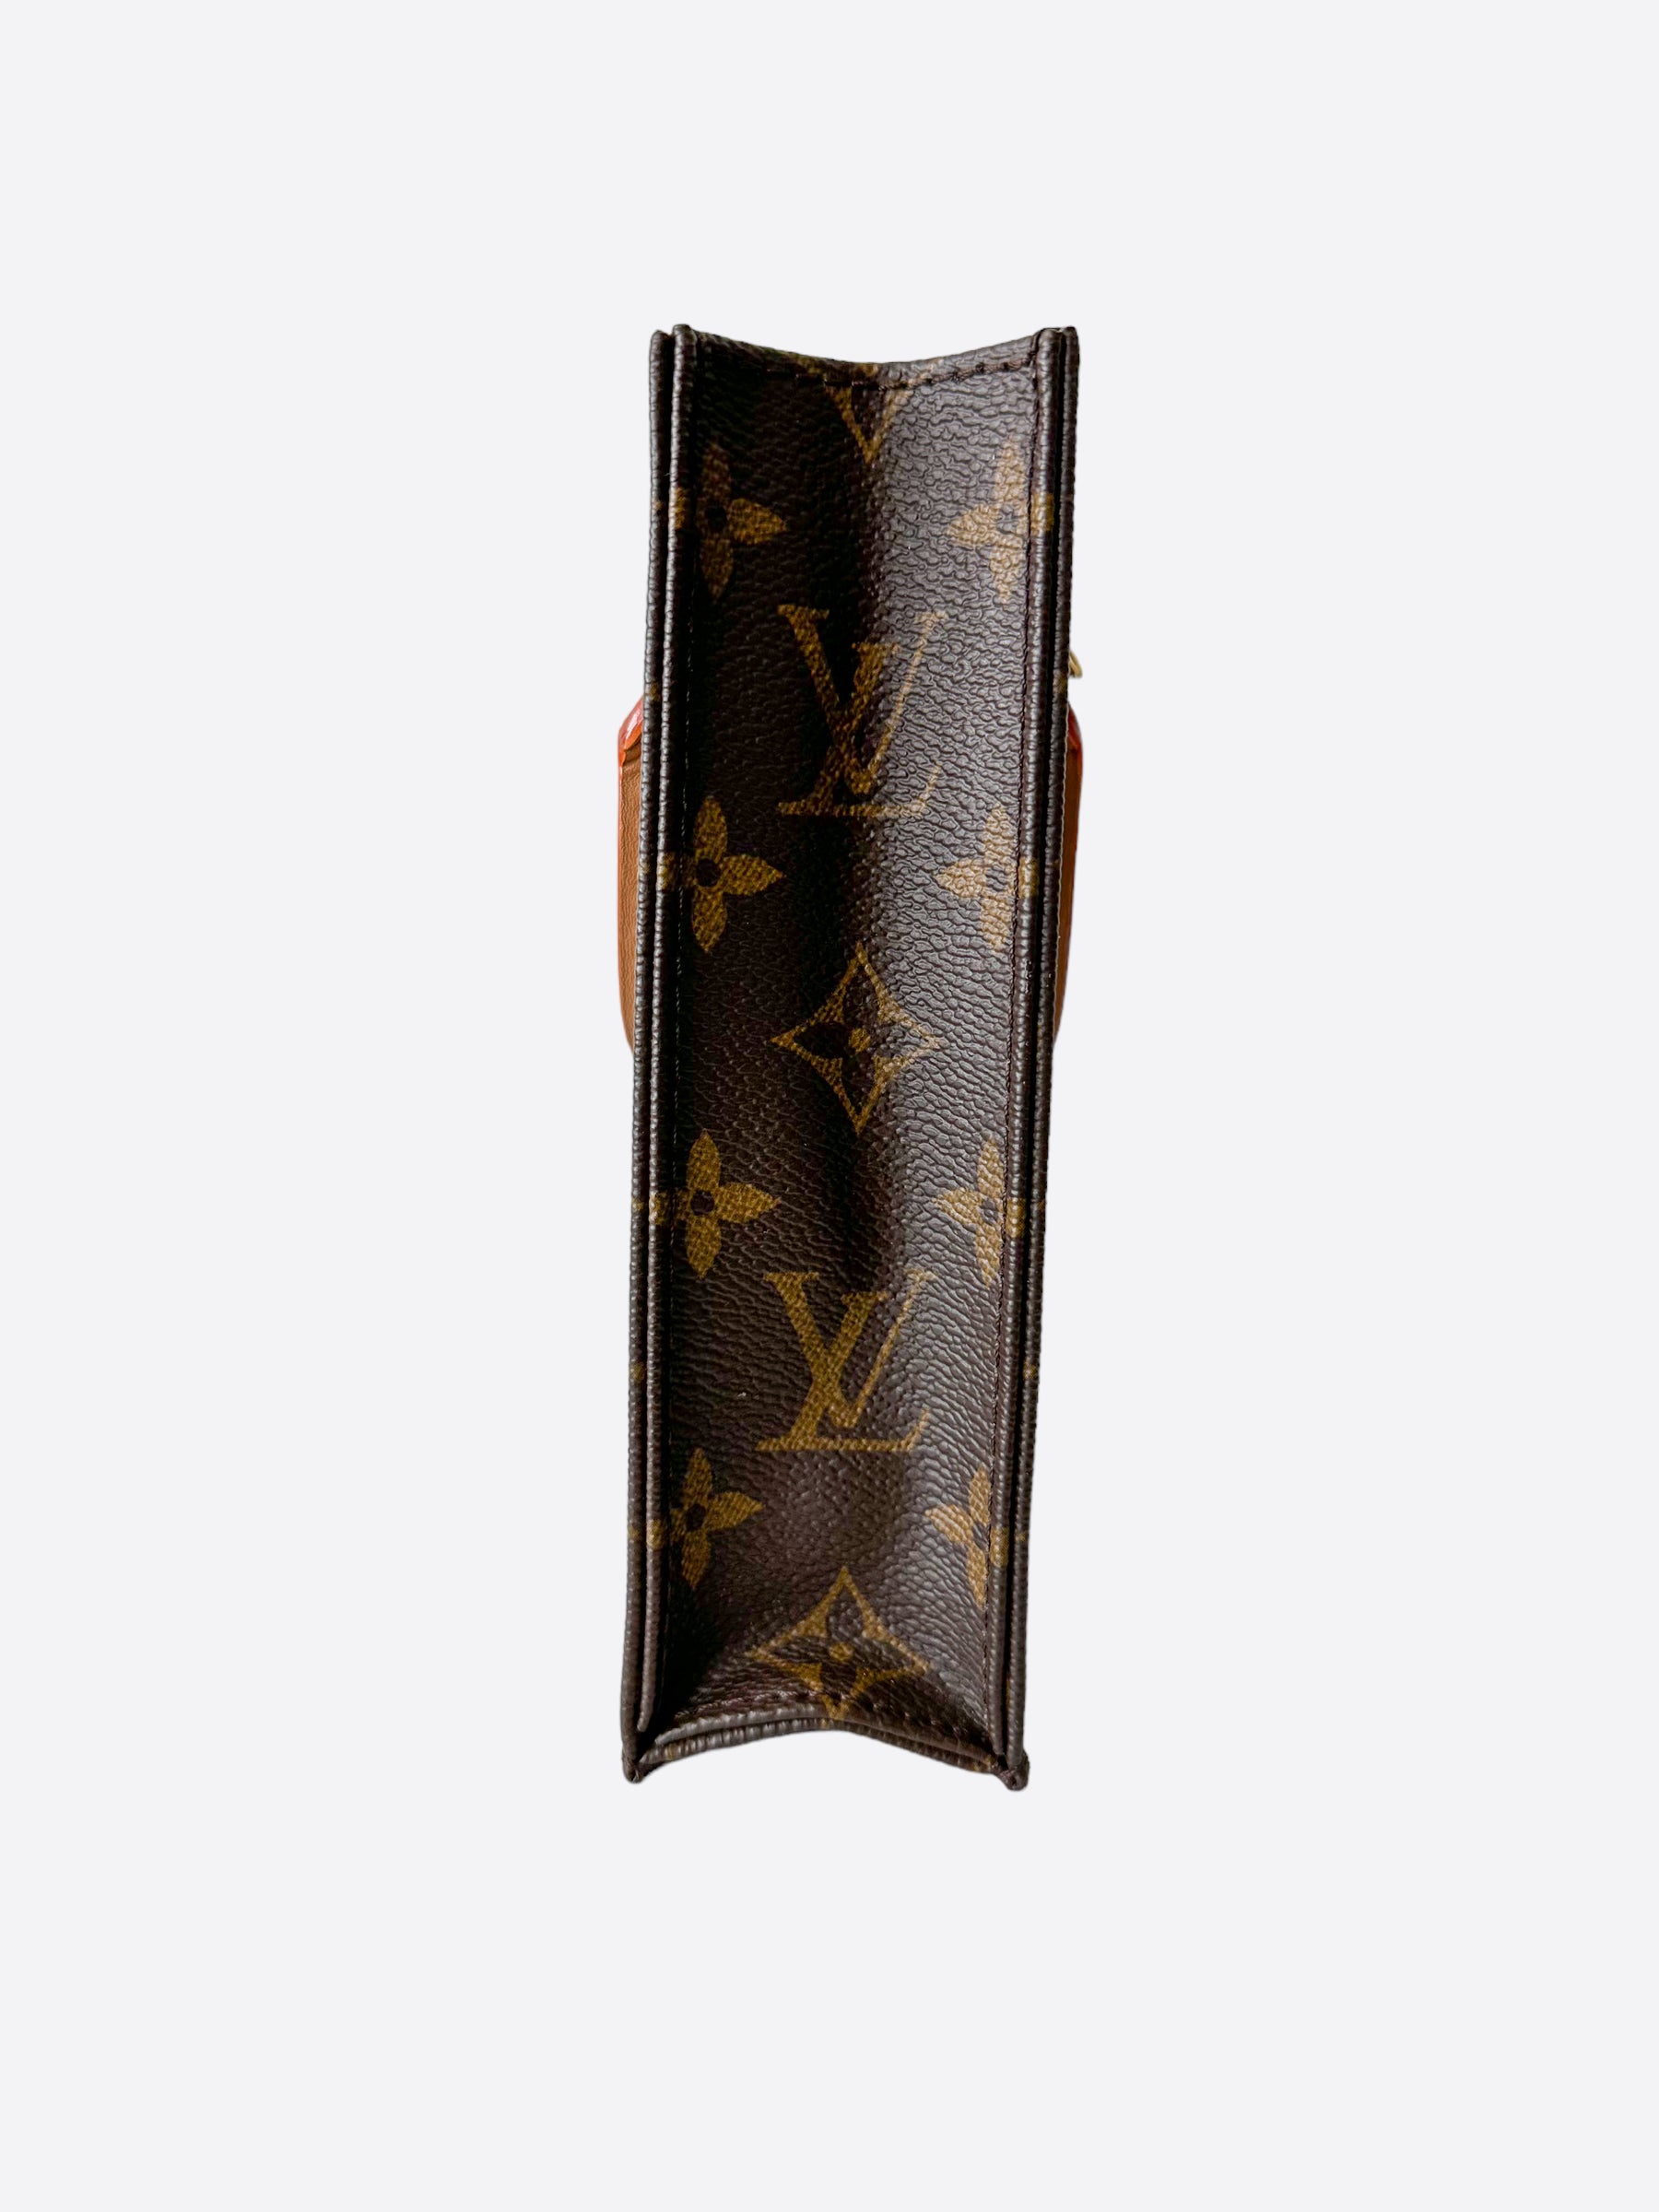 Sell Louis Vuitton Monogram Petit Sac Plat Bag - Brown